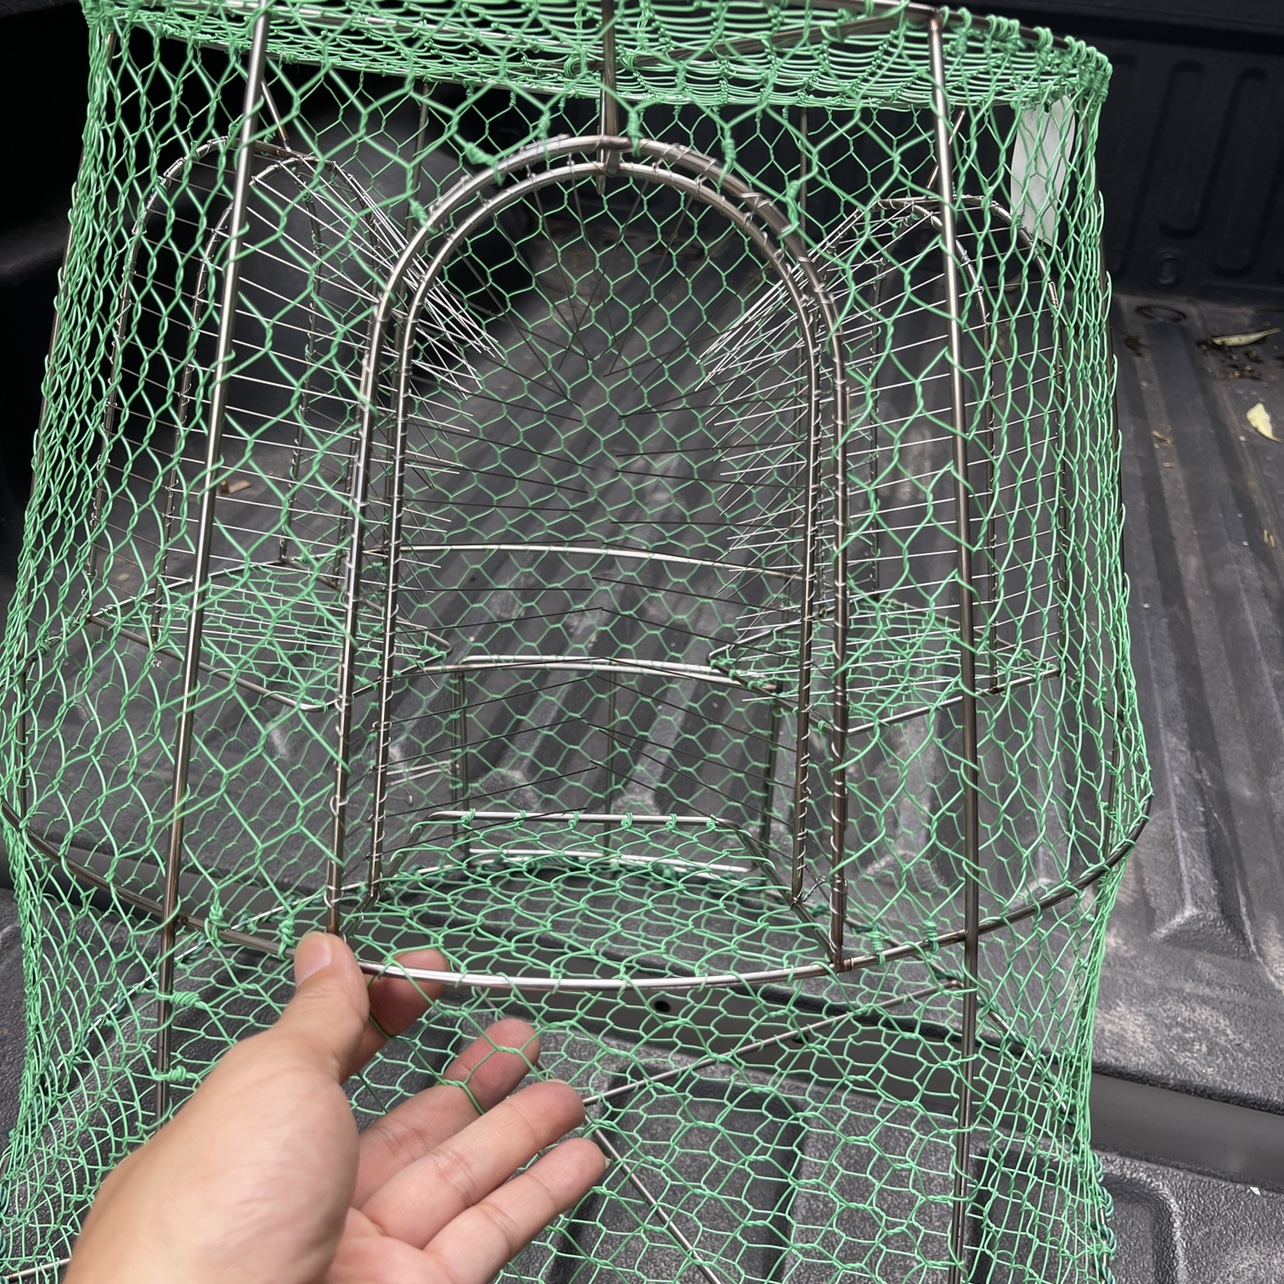 不锈钢捕鱼笼三个入口泥猛金鼓网笼直径52厘米高50cm自动反复入鱼 - 图1